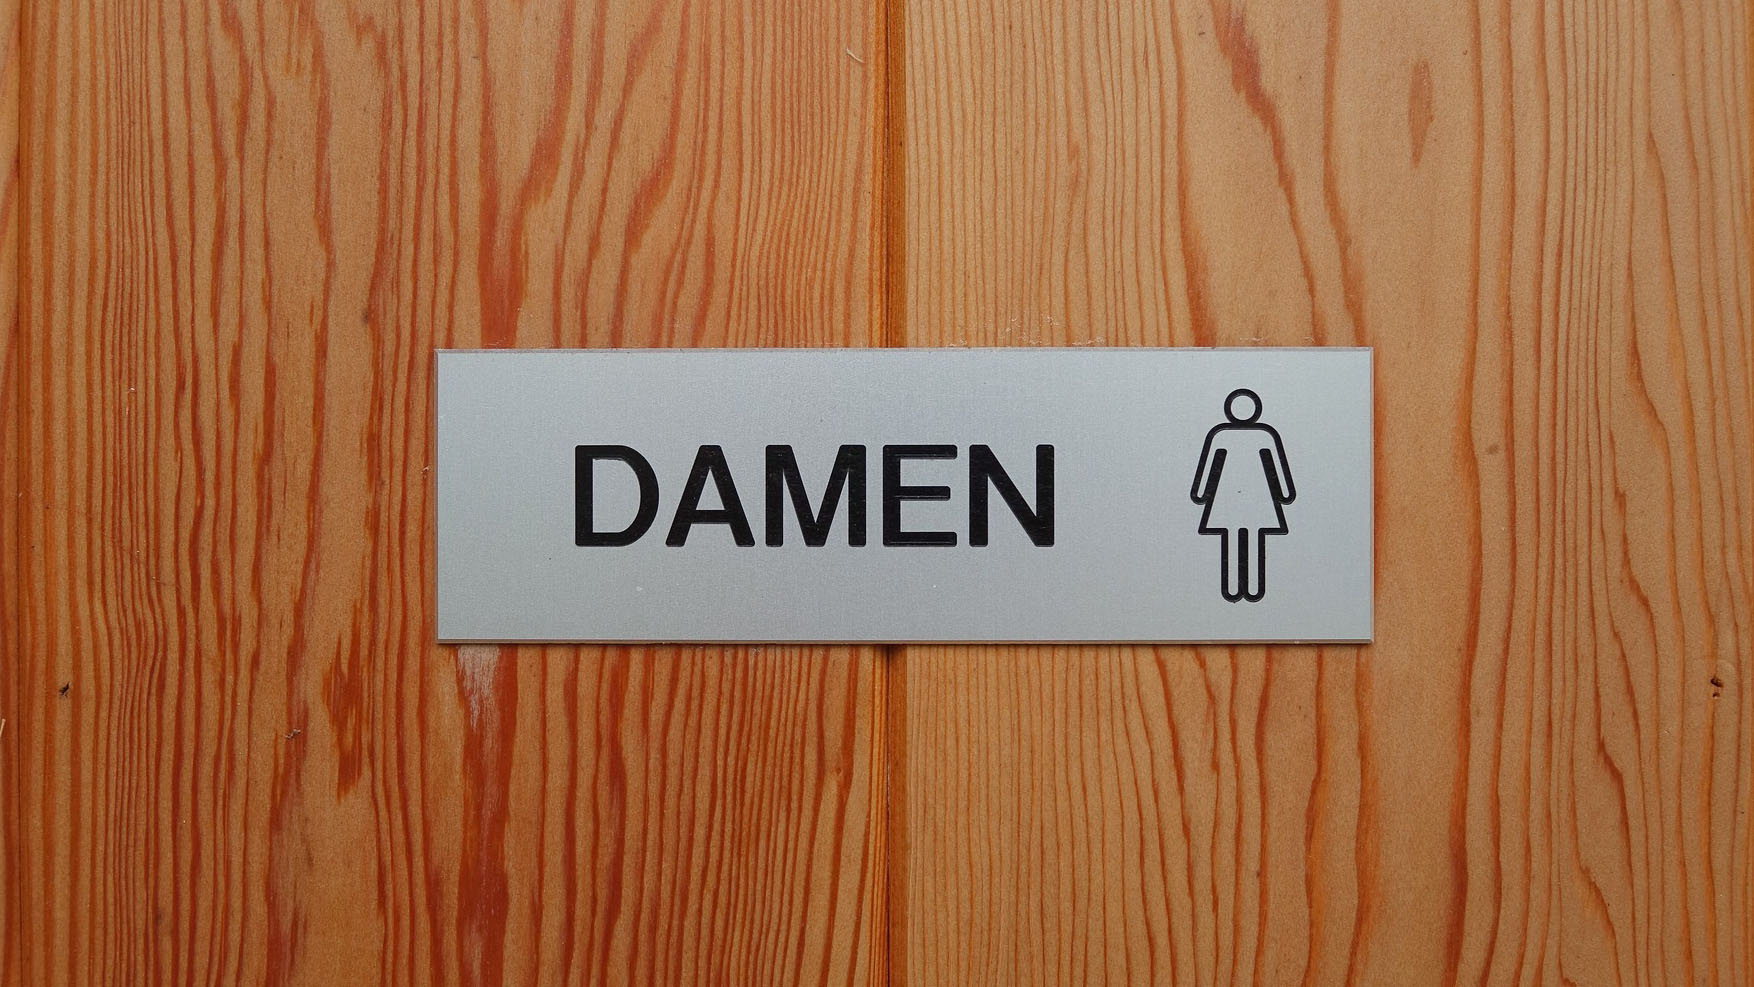 Holztür mti dem Schild "Damen" und einem Piktogram einer Frau.